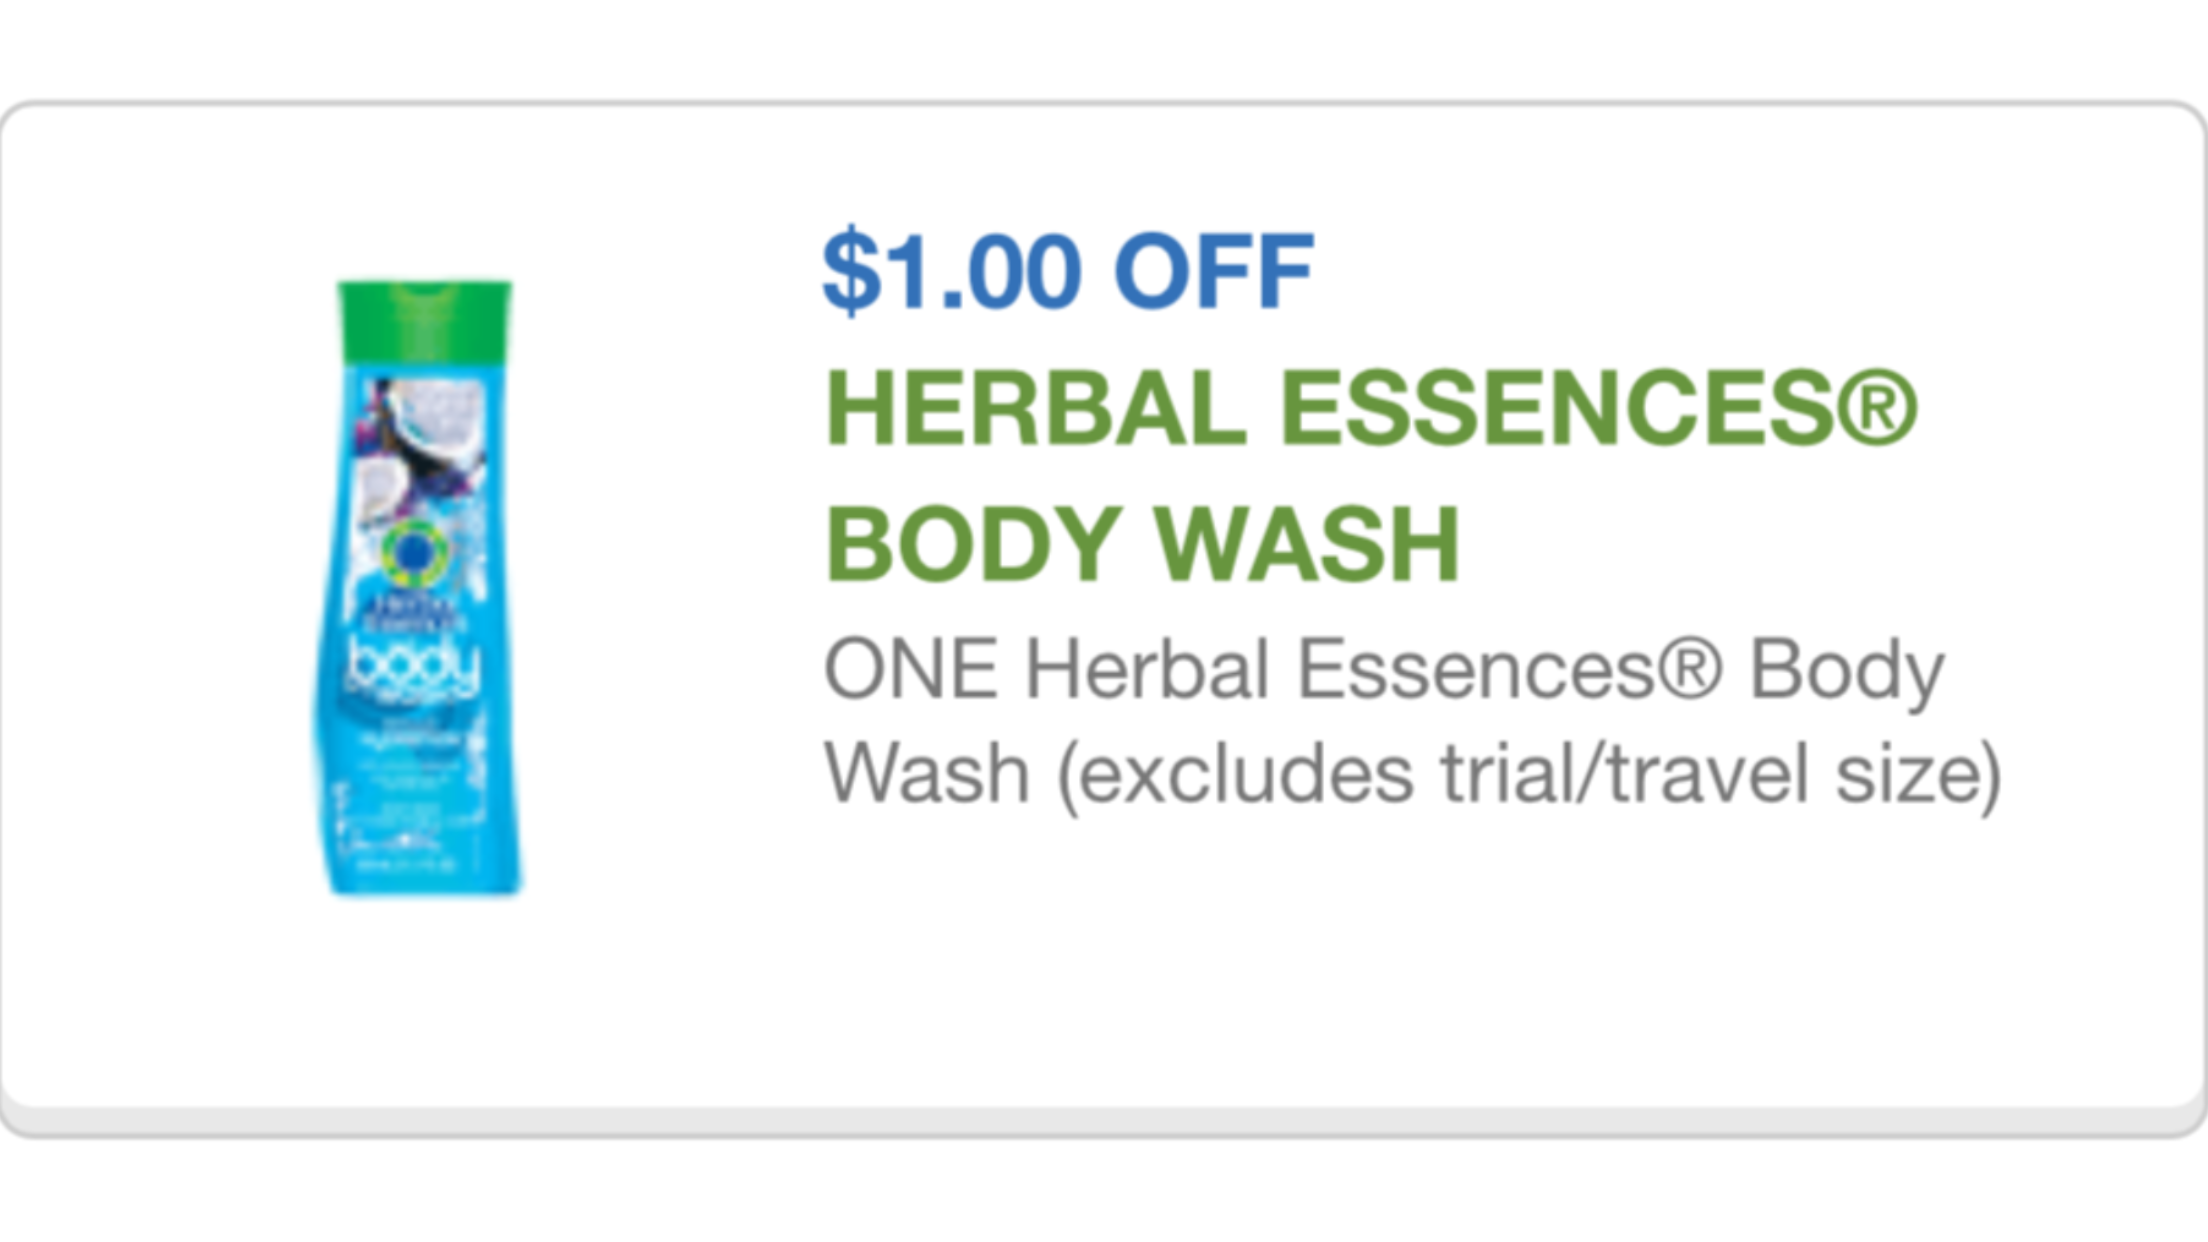 Herbal Essences Body Wash 9/25/15